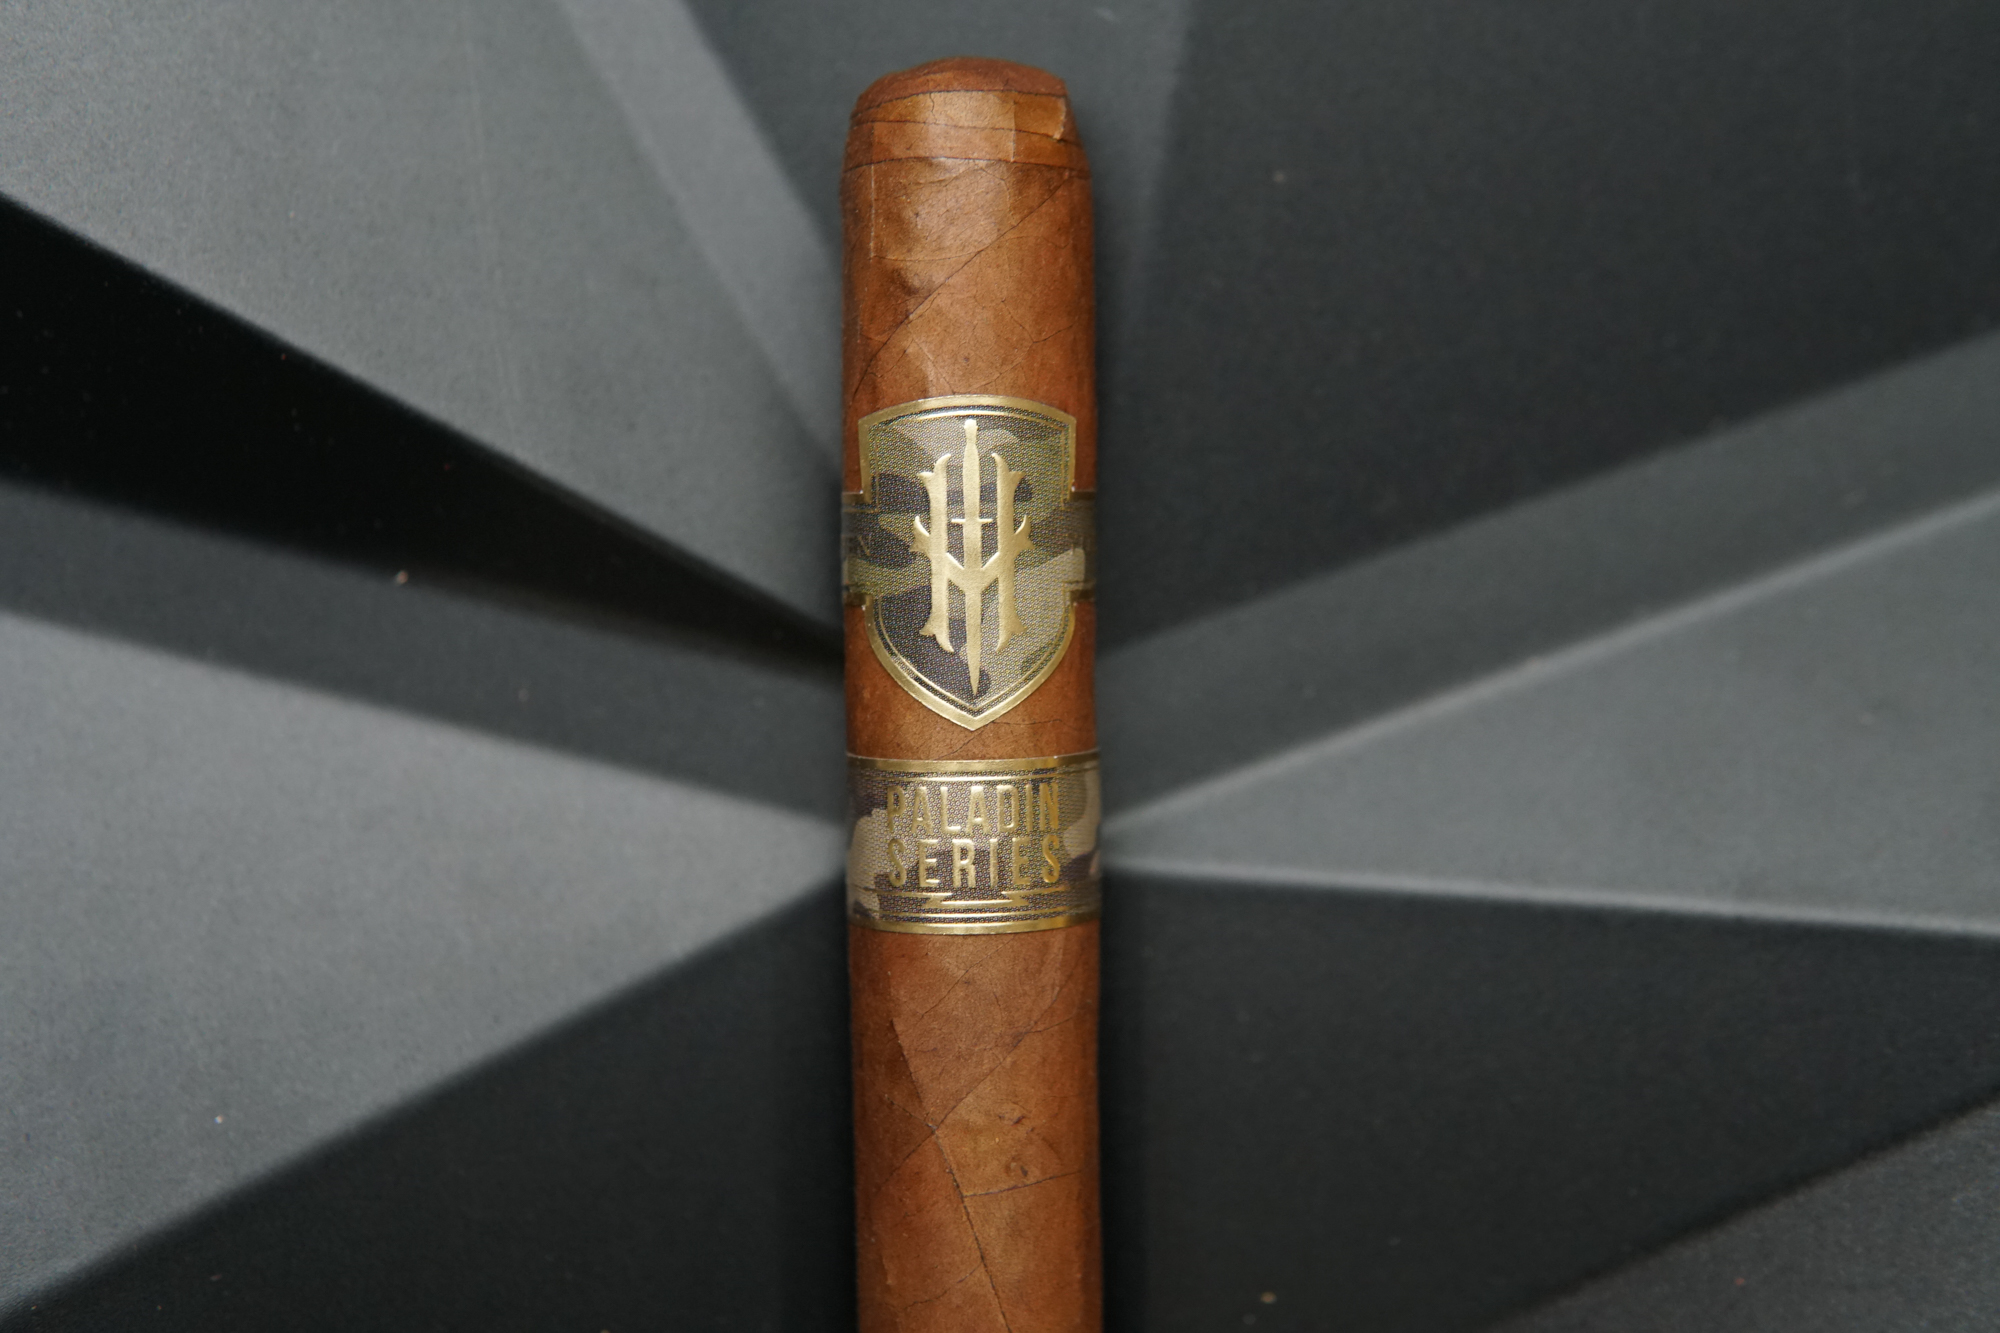 Hooten Paladin Young Series Single Cigar